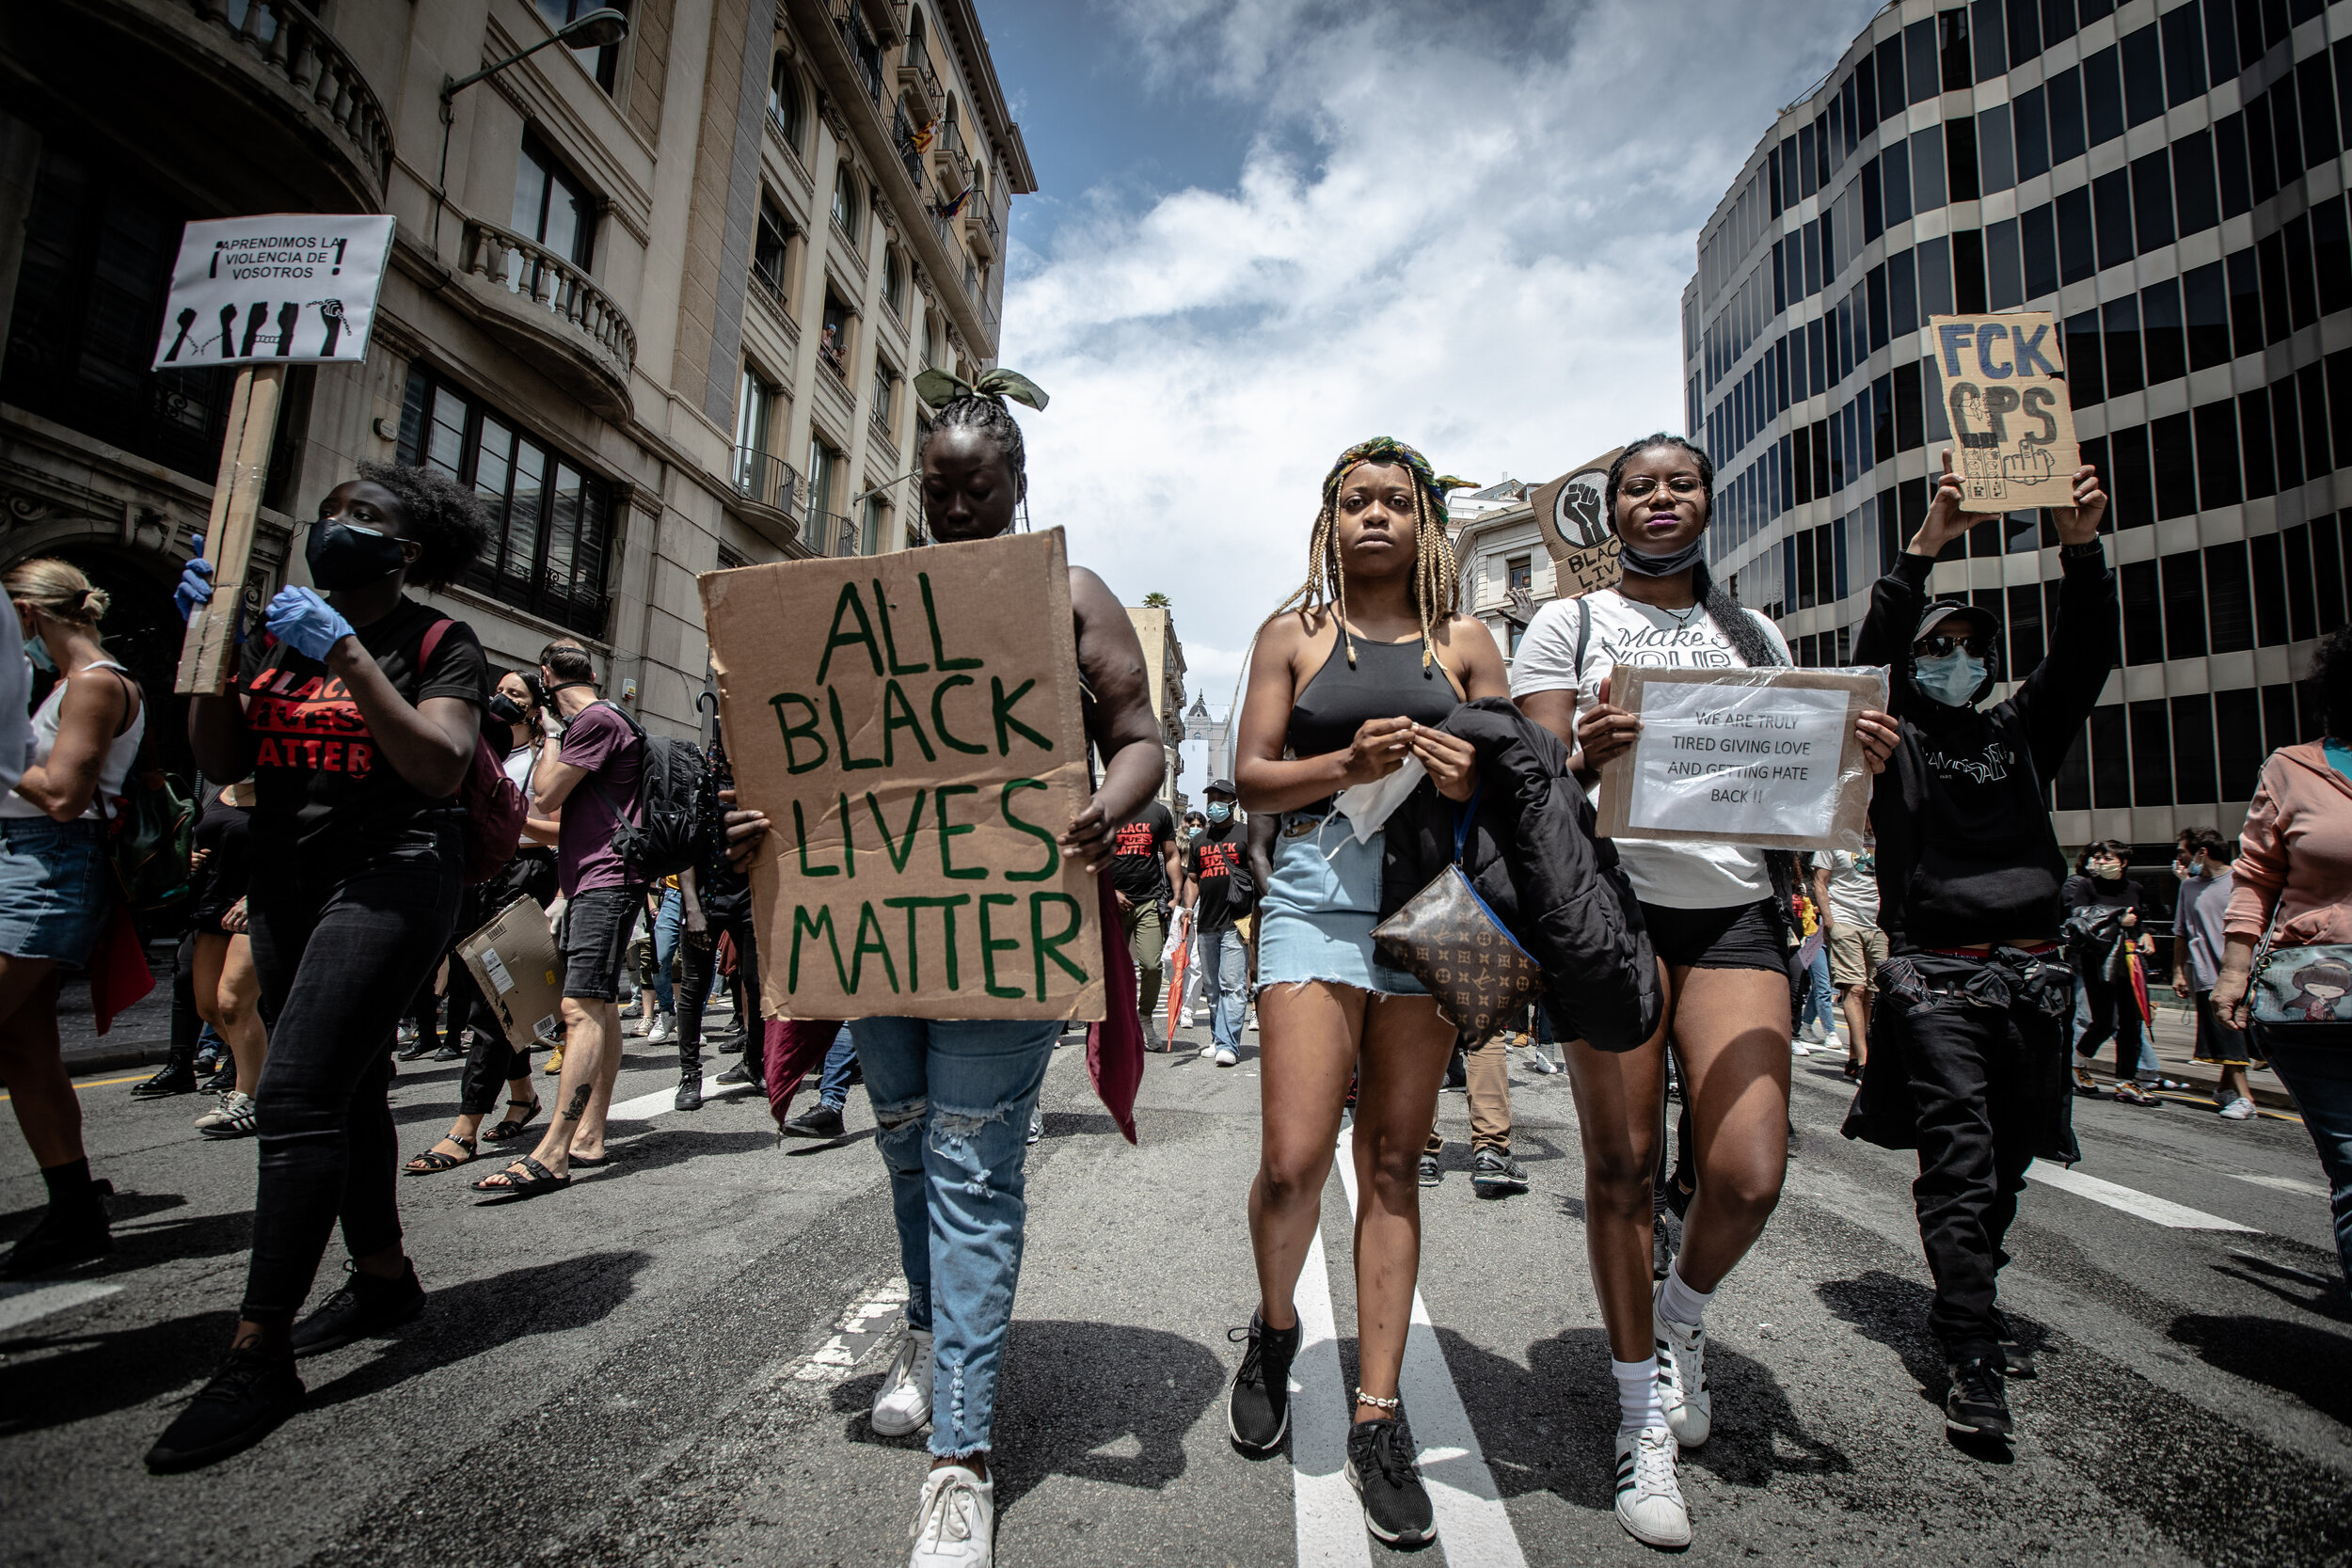  “All Black Lives Matter” - BLM protest, Barcelona, June 7th, 2020 